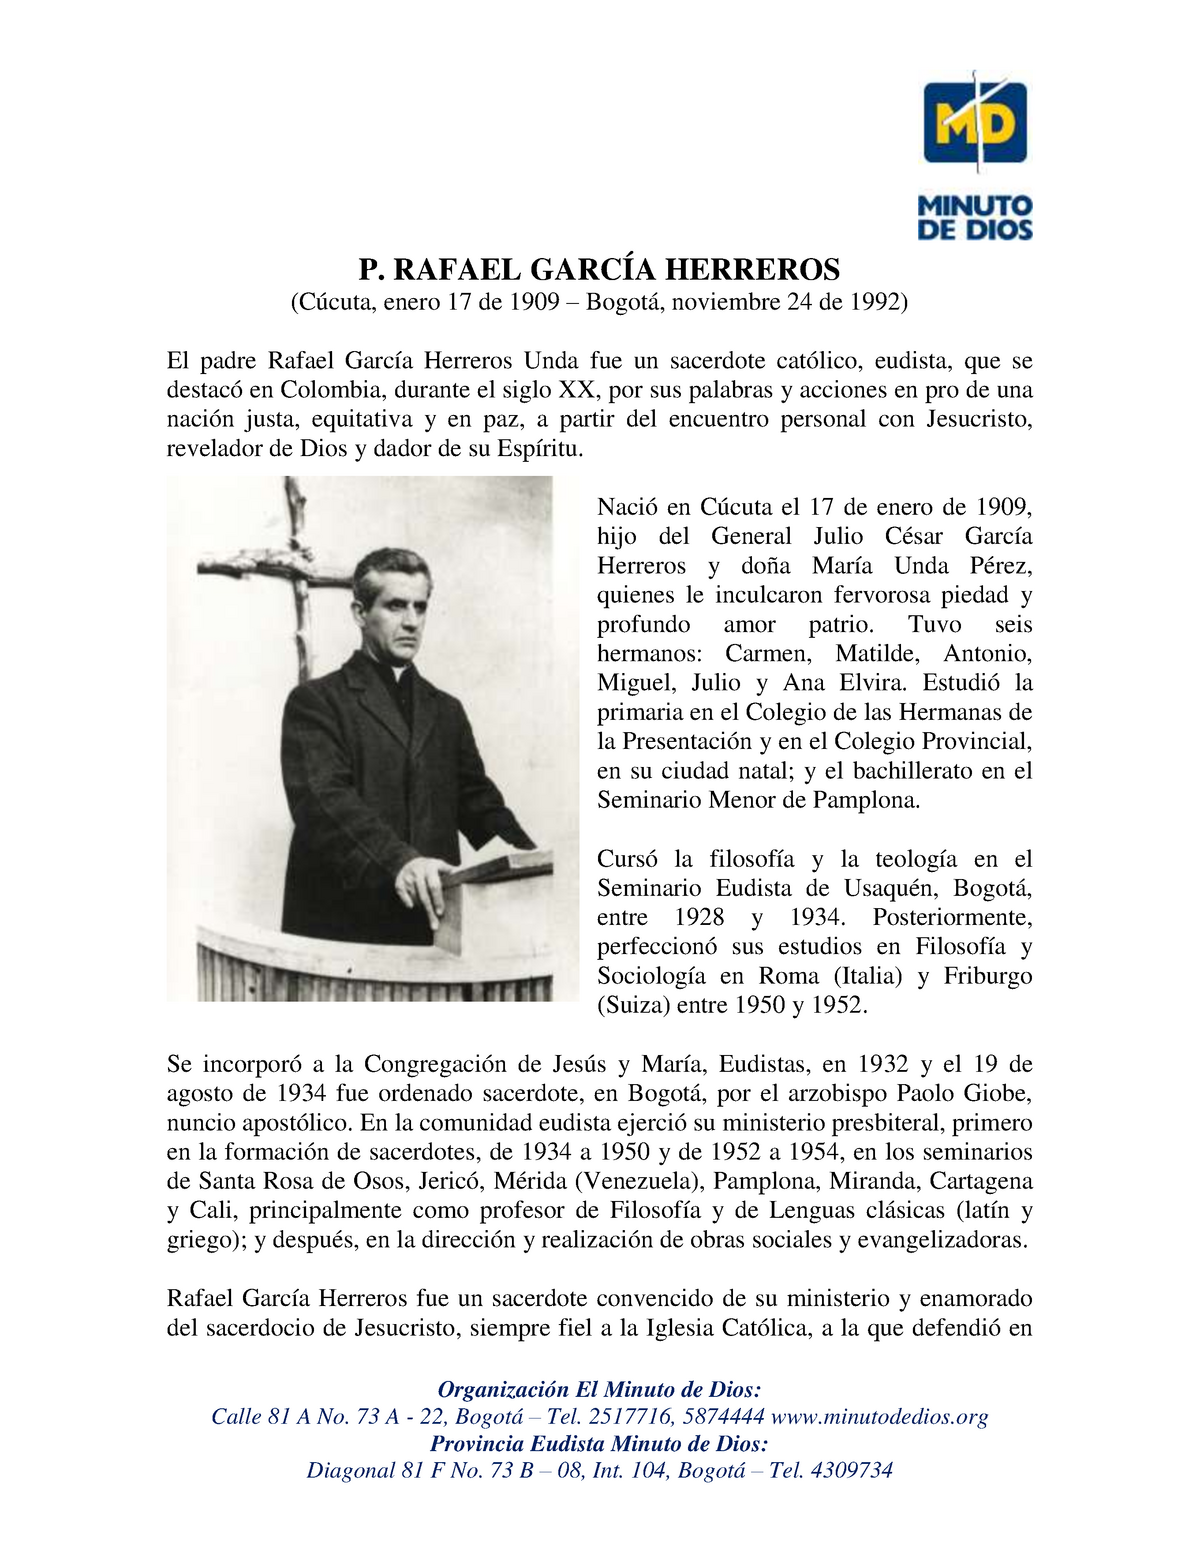 Padre rafael garcia herreros biografia - Organización El Minuto de Dios:  Calle 81 A No. 73 A - 22, - Studocu